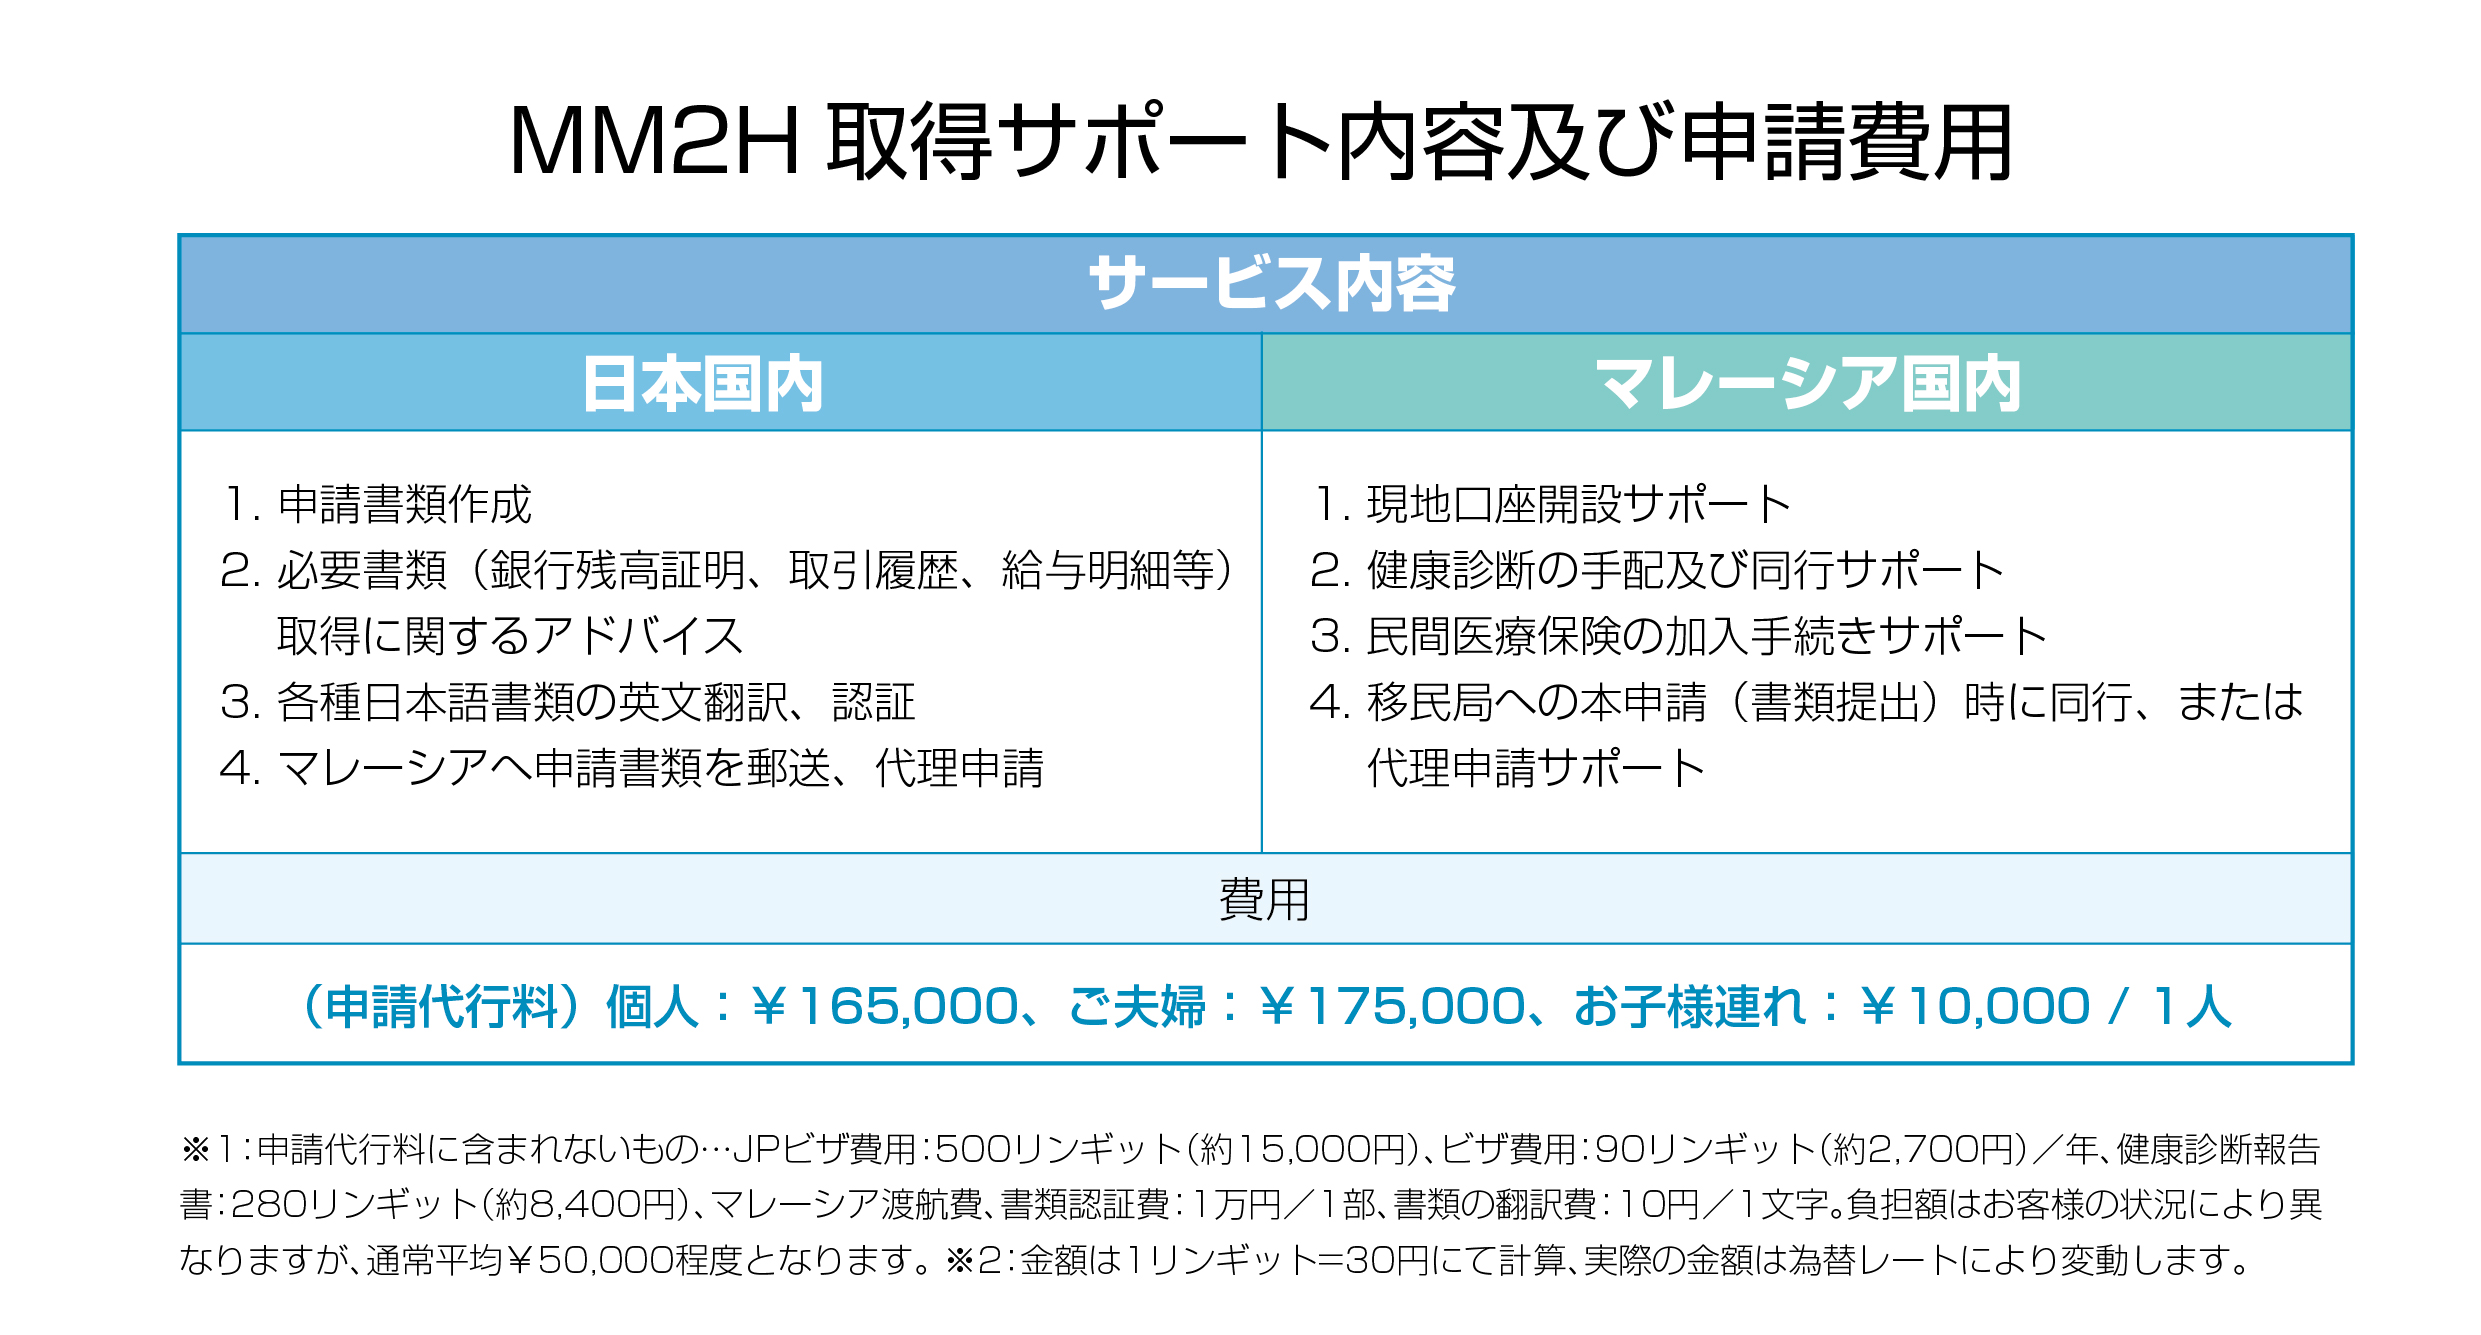 2020 JVV日本官網-MM2H申請流程(日)-03